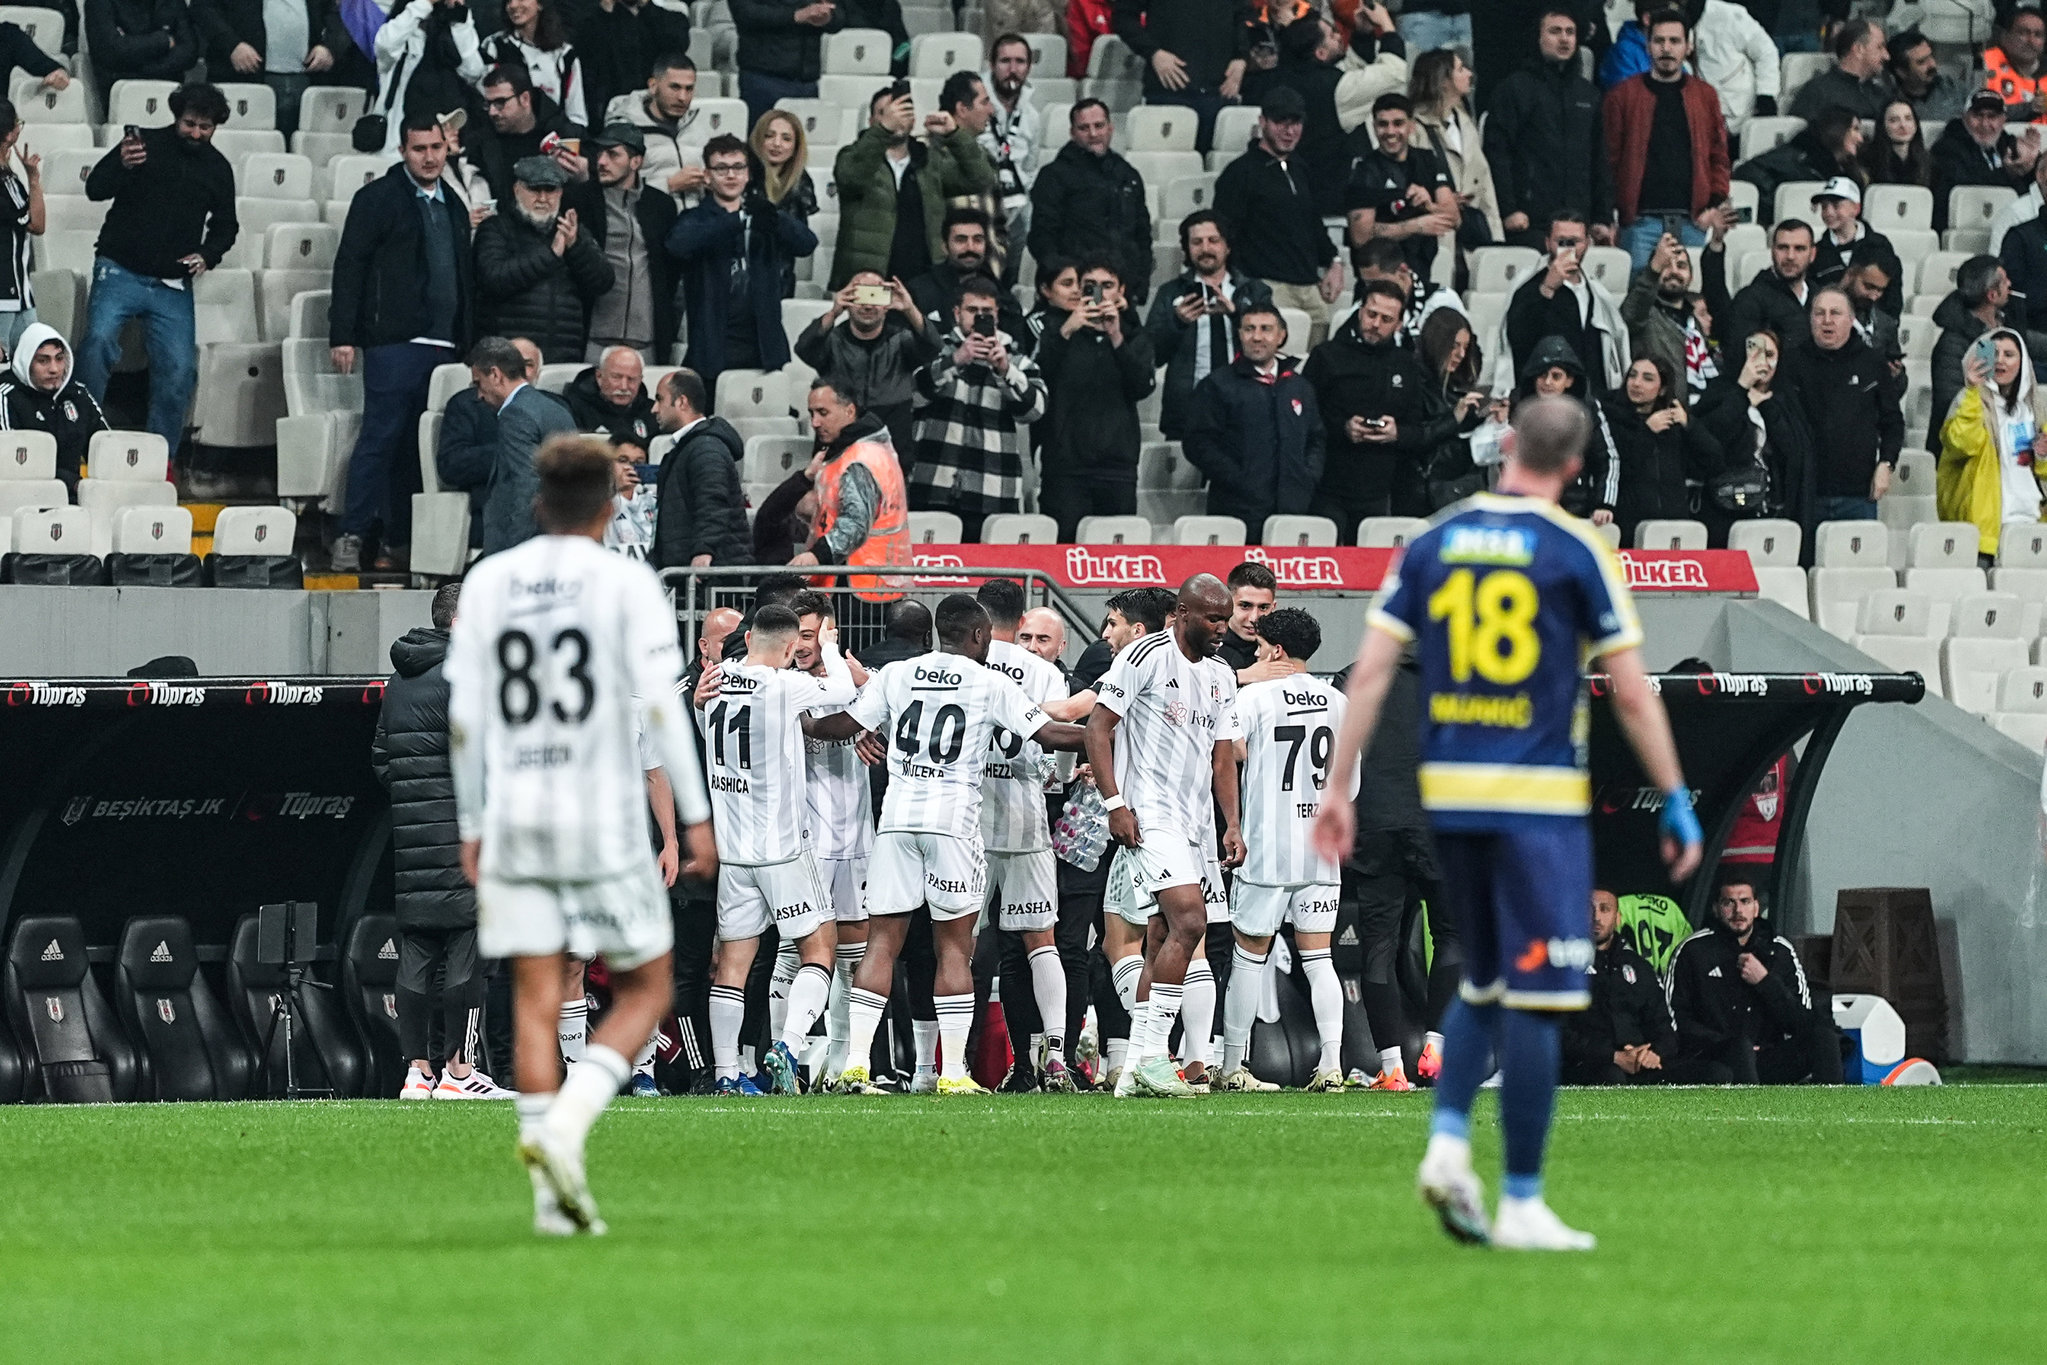 aSpor: Beşiktaş 2-0 MKE Ankaragücü (MAÇ SONUCU-ÖZET) Beşiktaş kötü gidişata dur dedi! 5 maç sonra kazandı